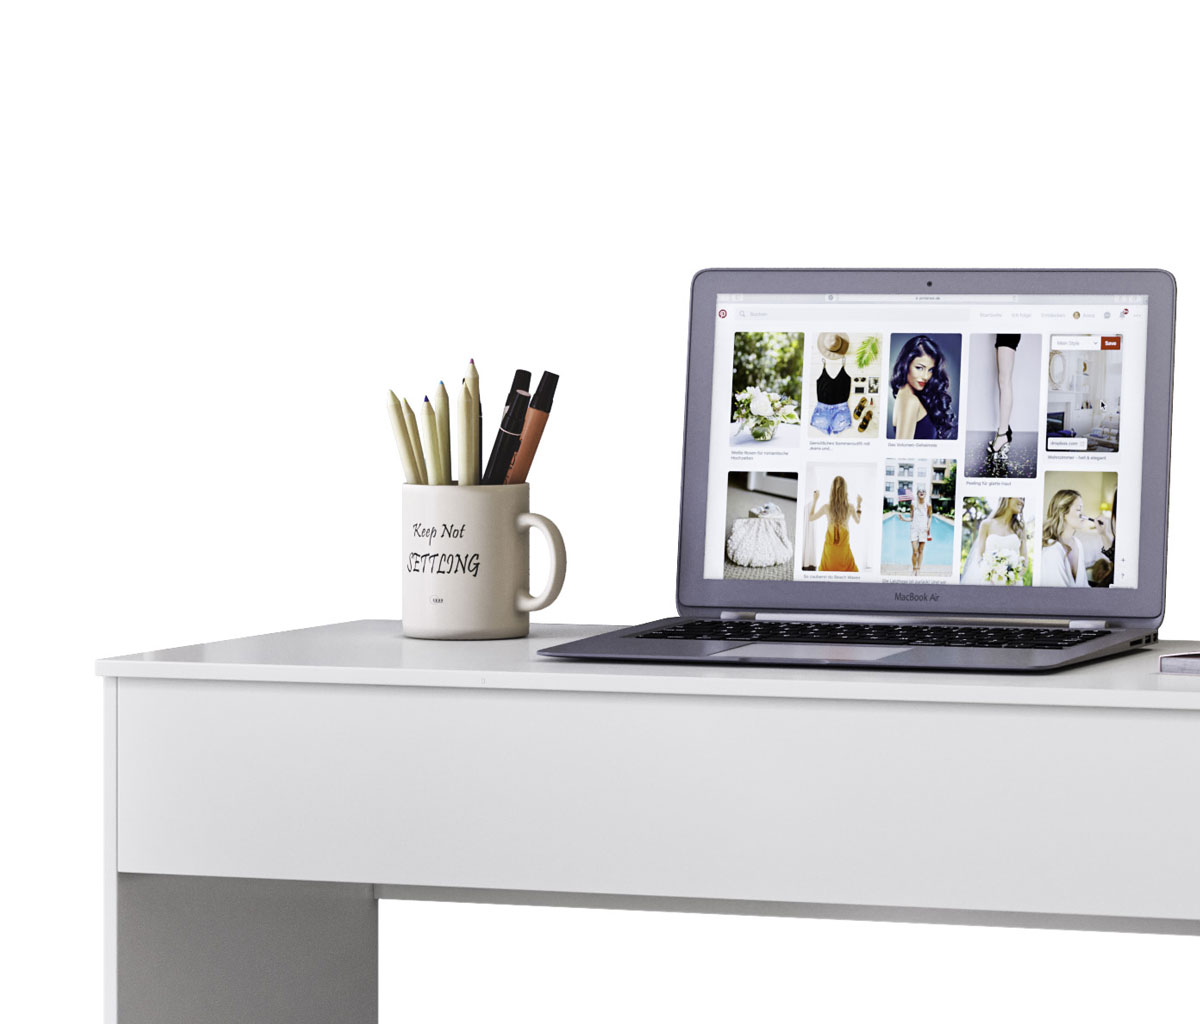 Escrivaninha Mesa para Computador Monalisa Branco - Móveis Fiorello